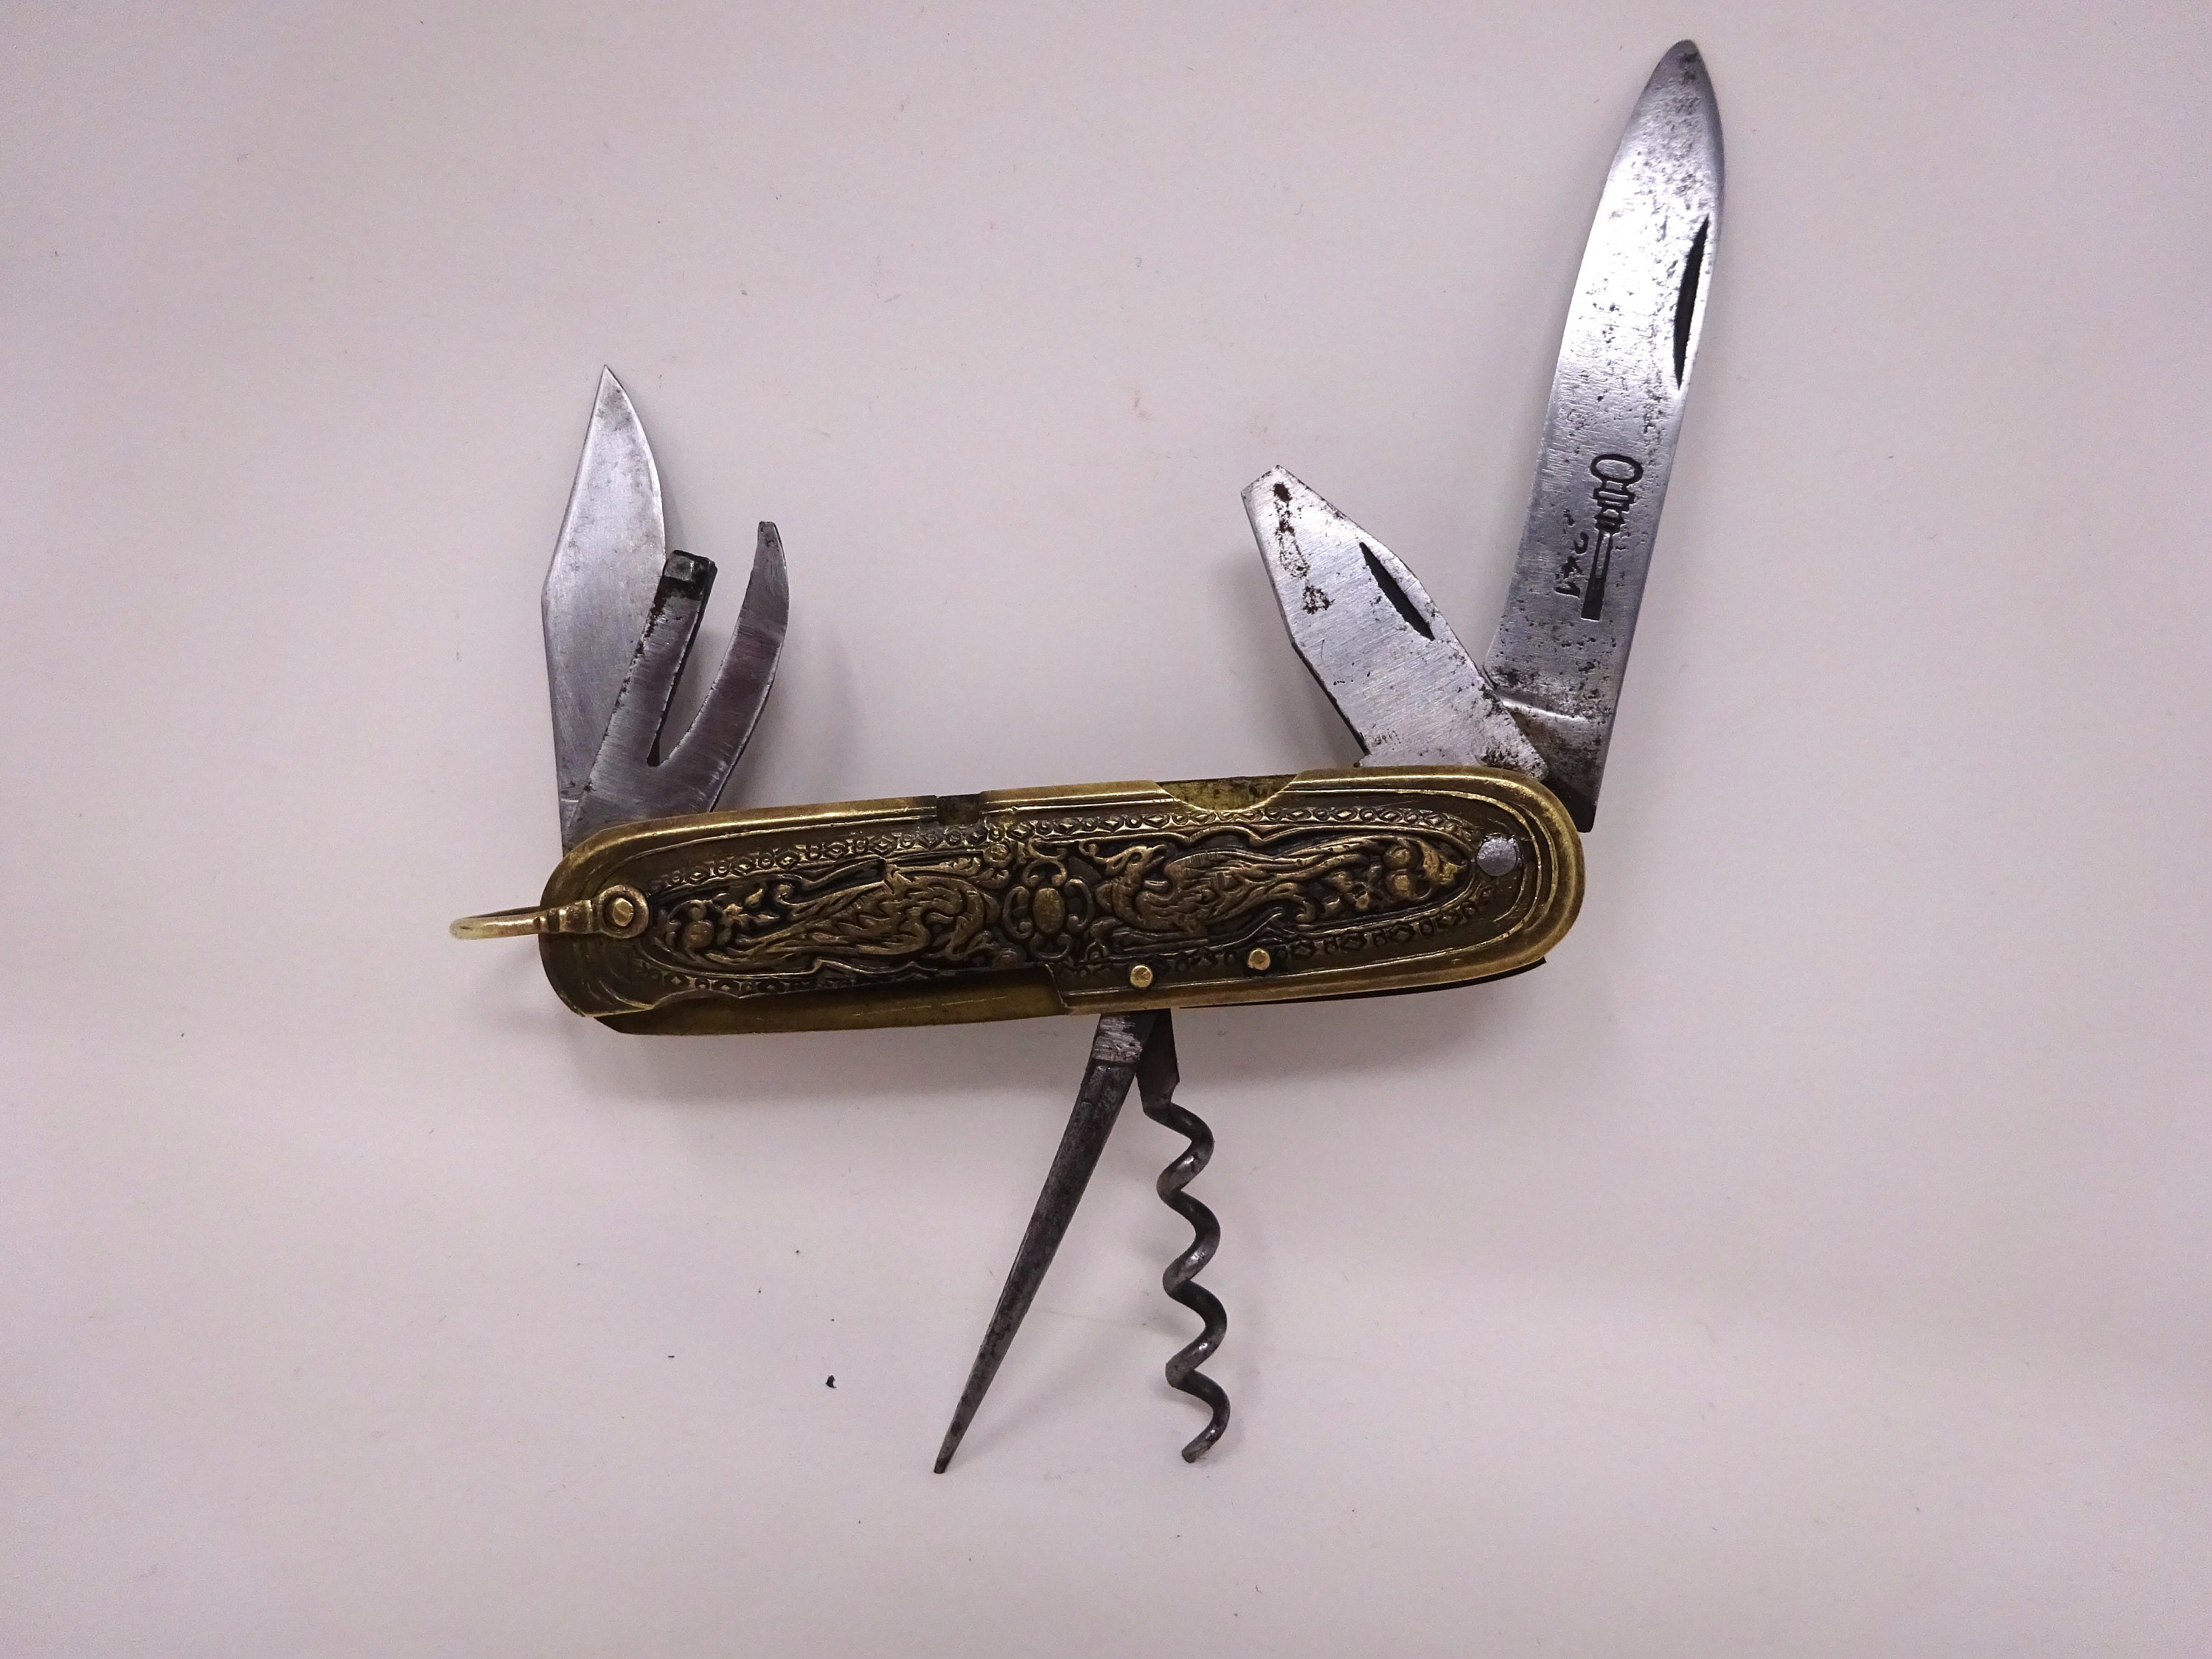 Brass Pocket Knife -  Canada